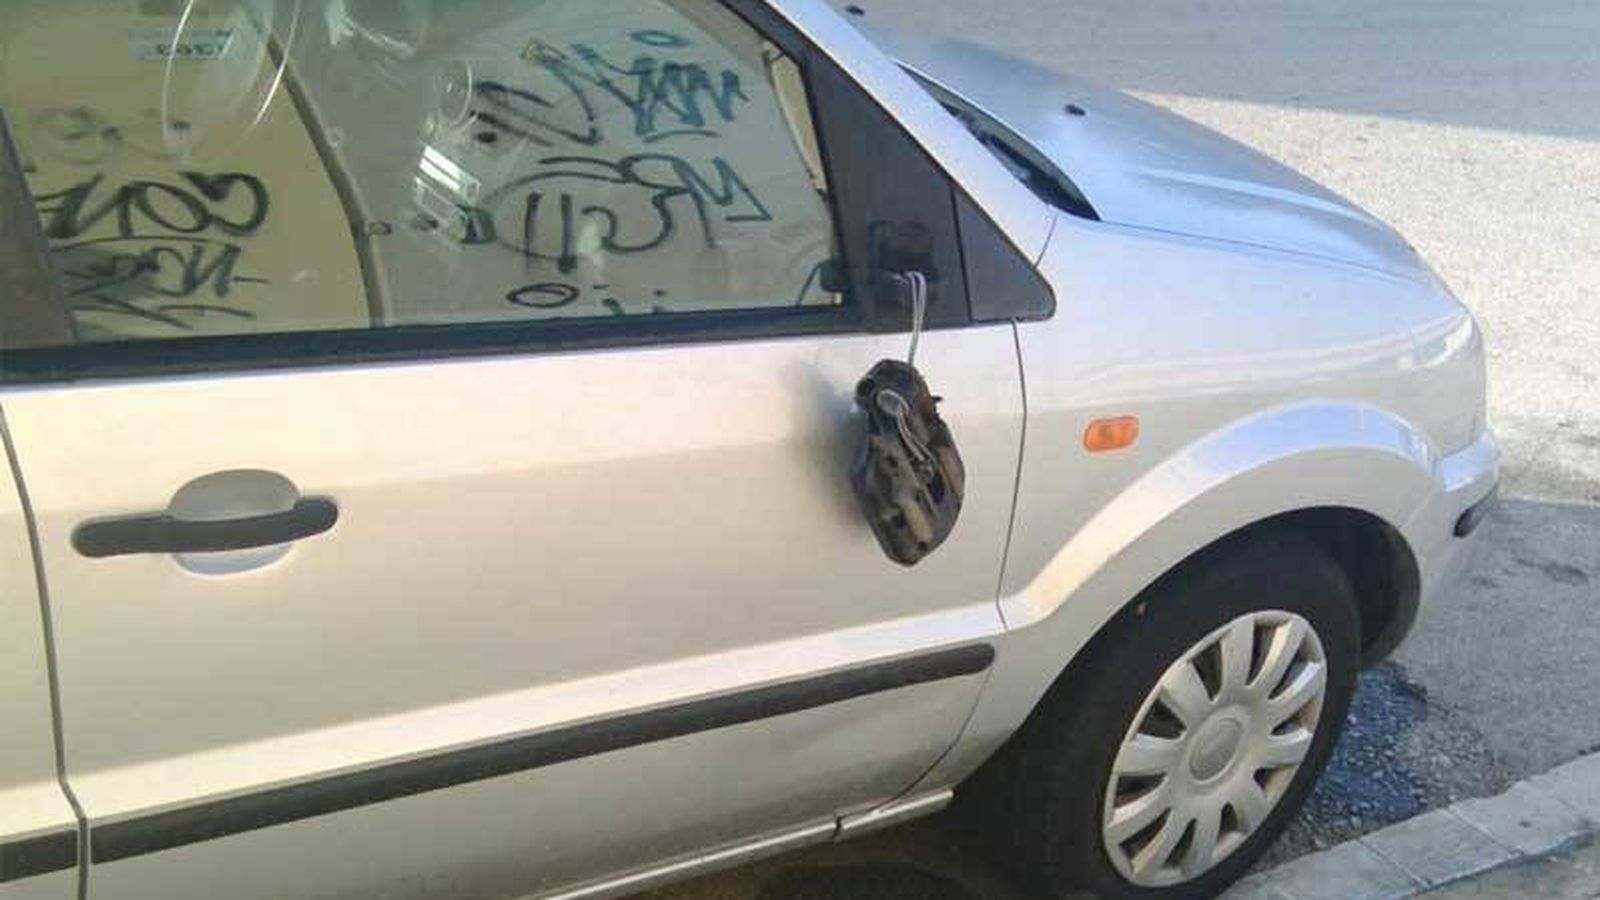 Foto: El vehículo de uno de los vecinos al que le rompieron un retrovisor. (EC)